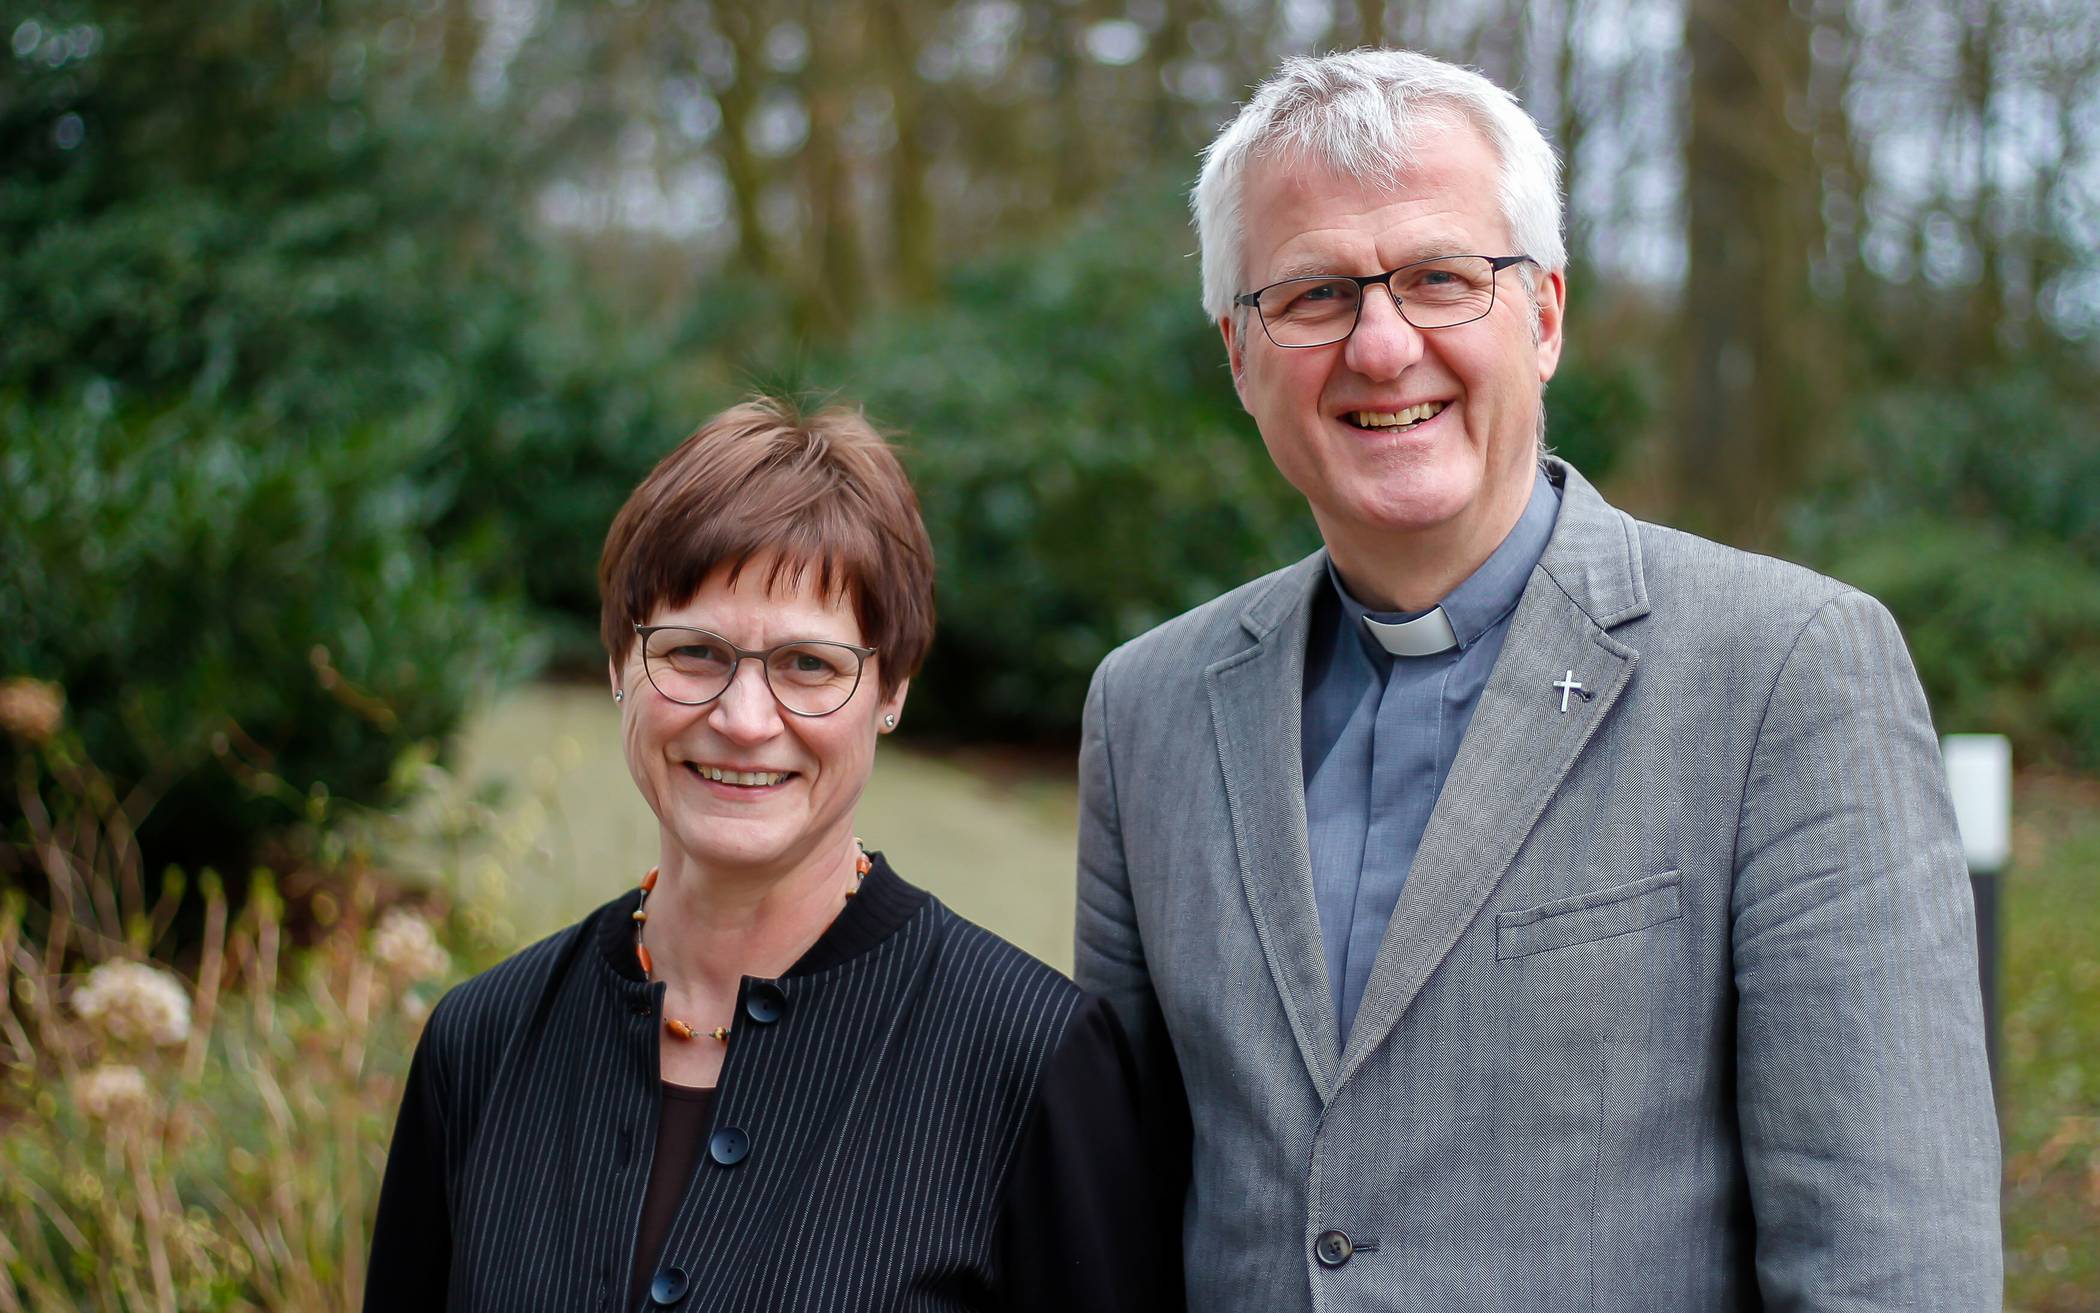  Ilka Federschmidt ist Wuppertals evangelische Superintendentin, Bruno Kurth der katholische Stadtdechant.  